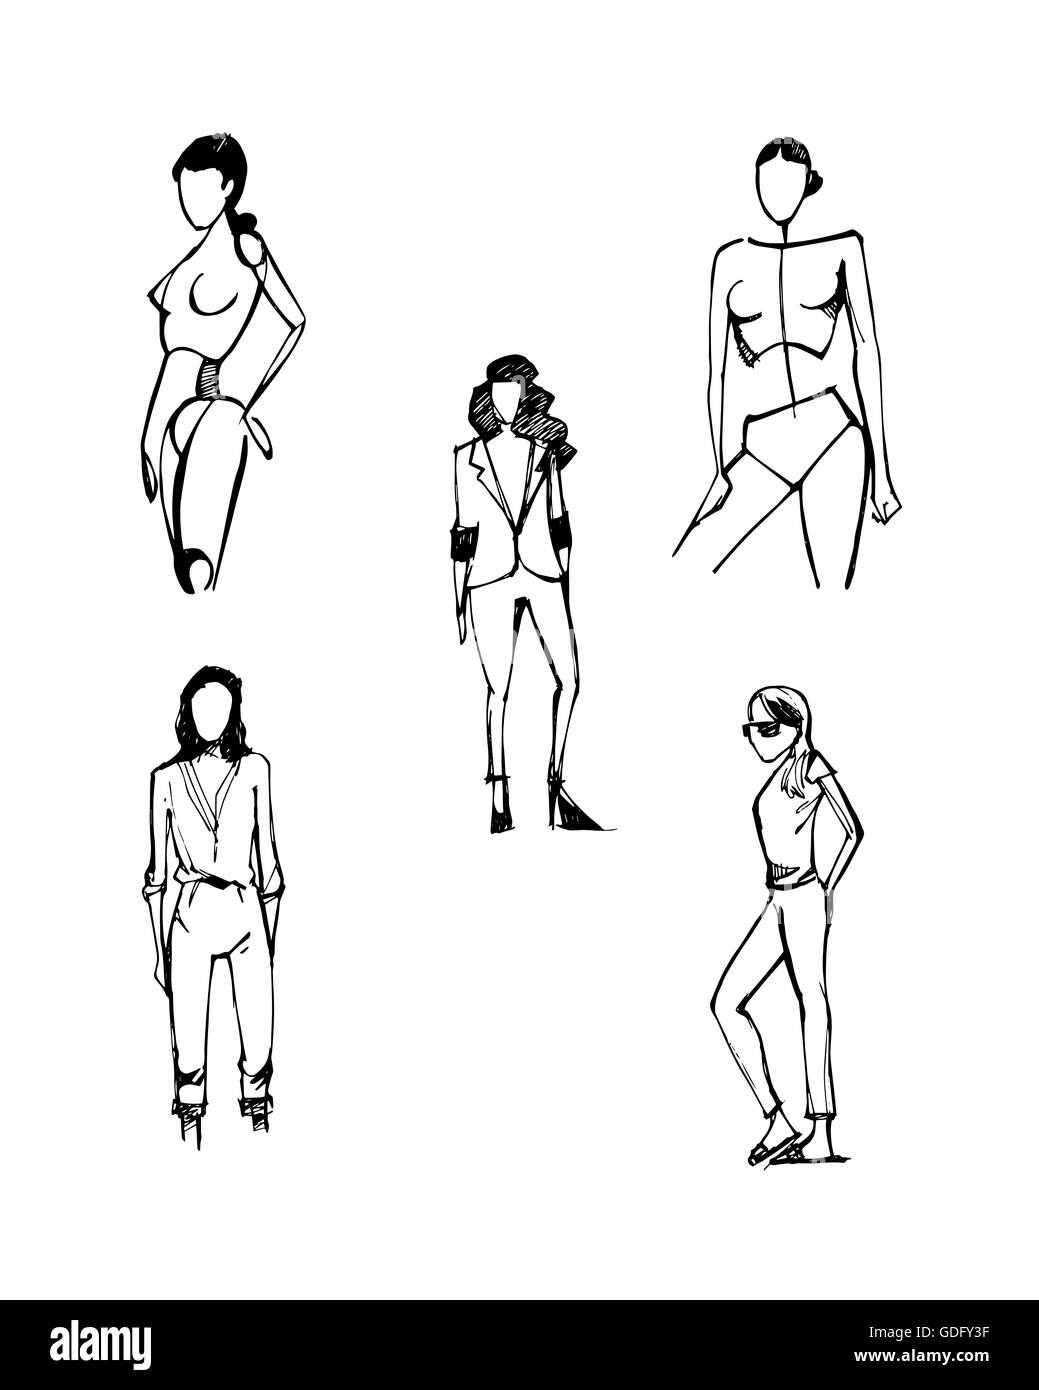 Handgezeichnete Illustrationen oder Zeichnung von einigen Frauen Silhouetten Stockfoto